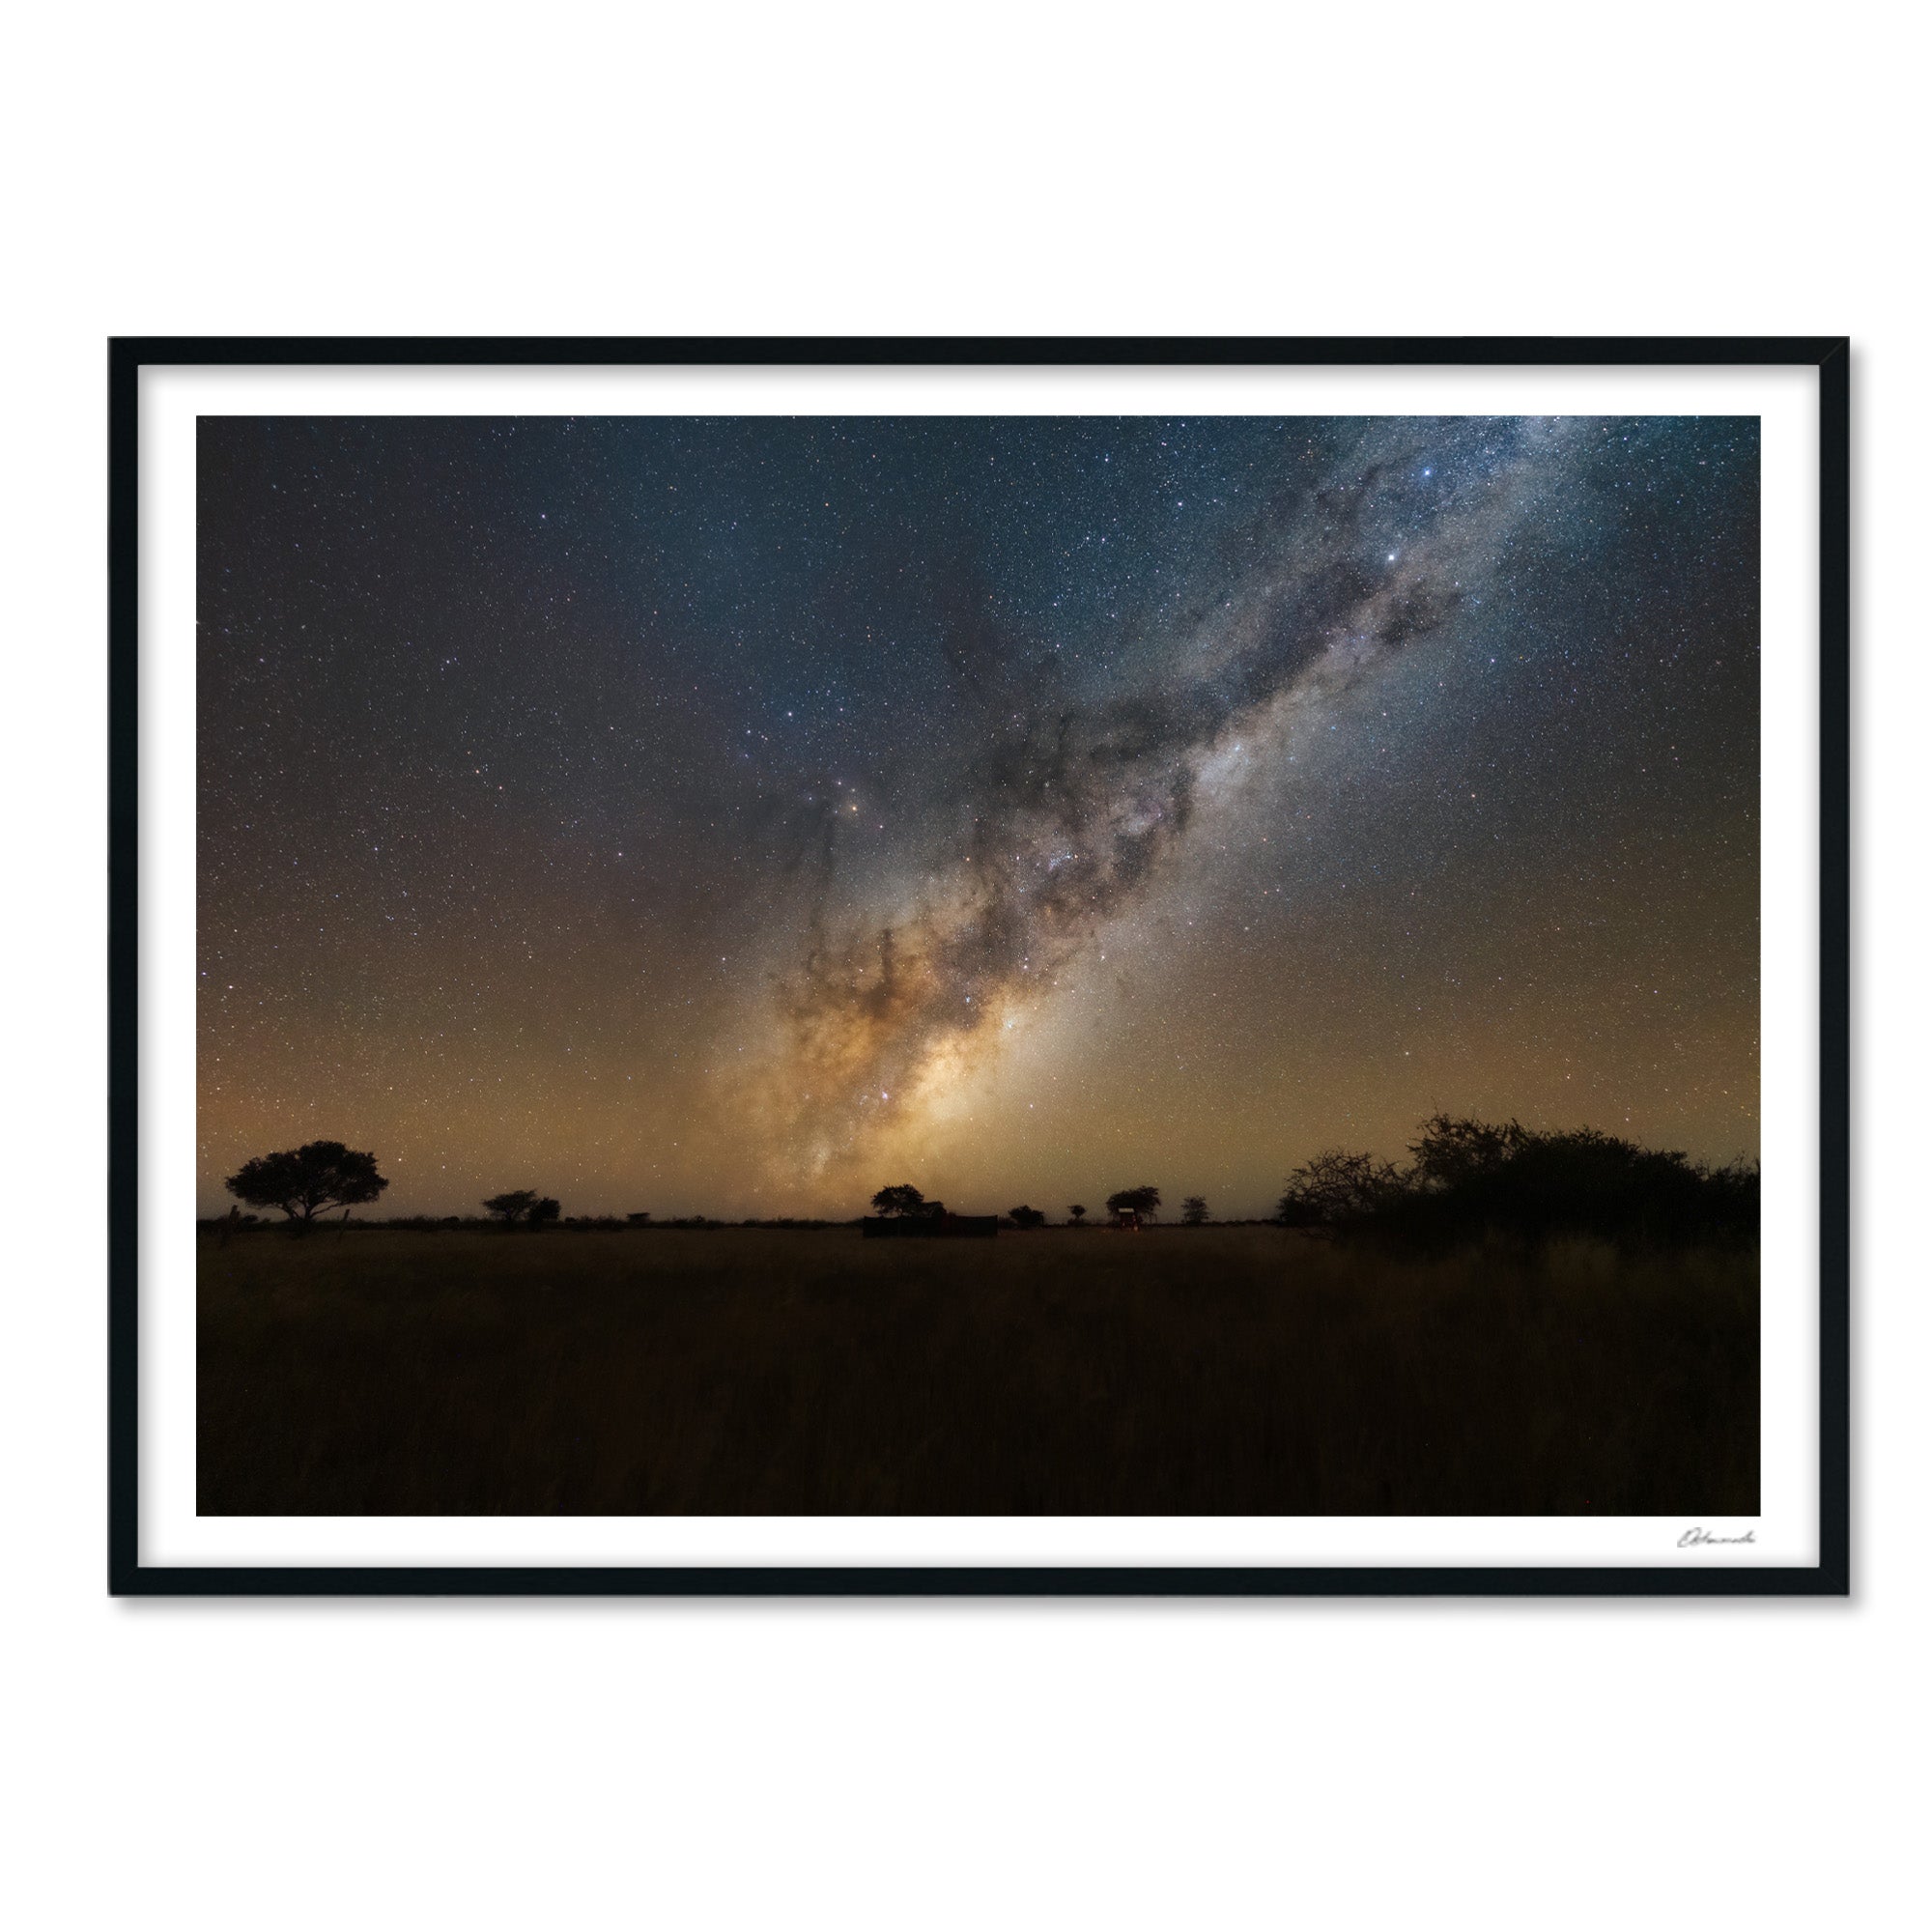 Namibian sky - Gigalaxy